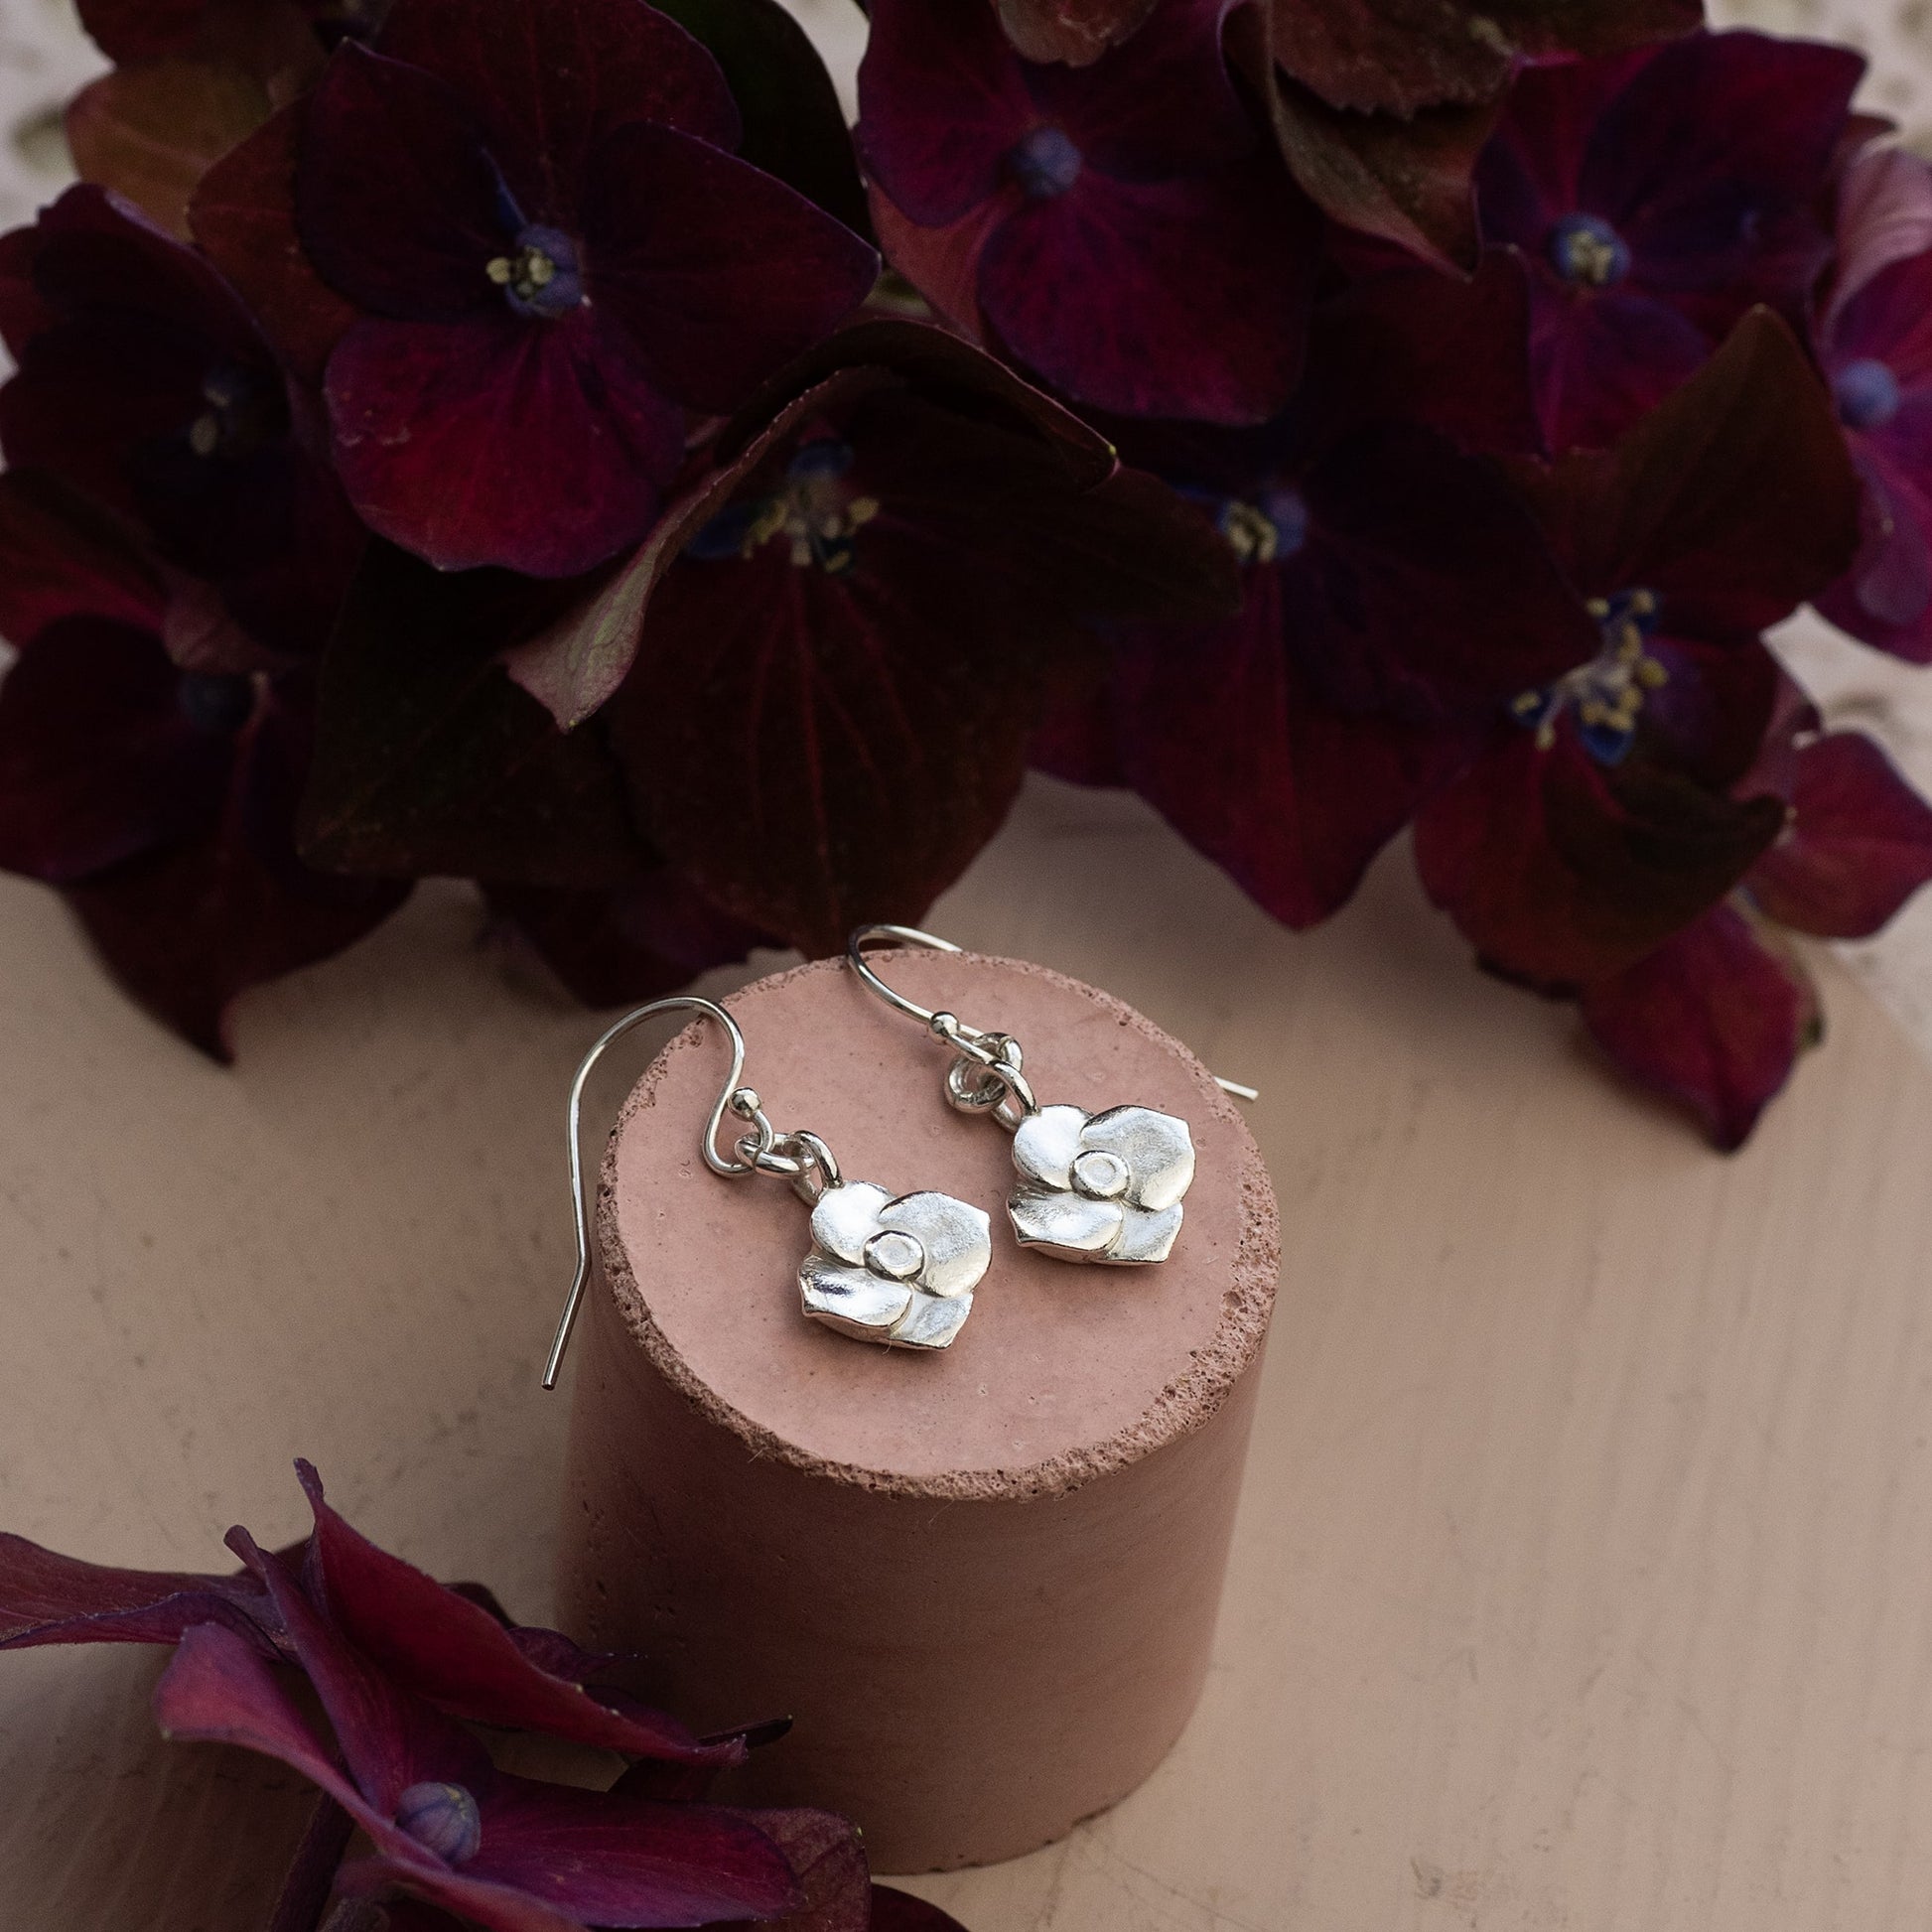 Hydrangea birth flower earrings